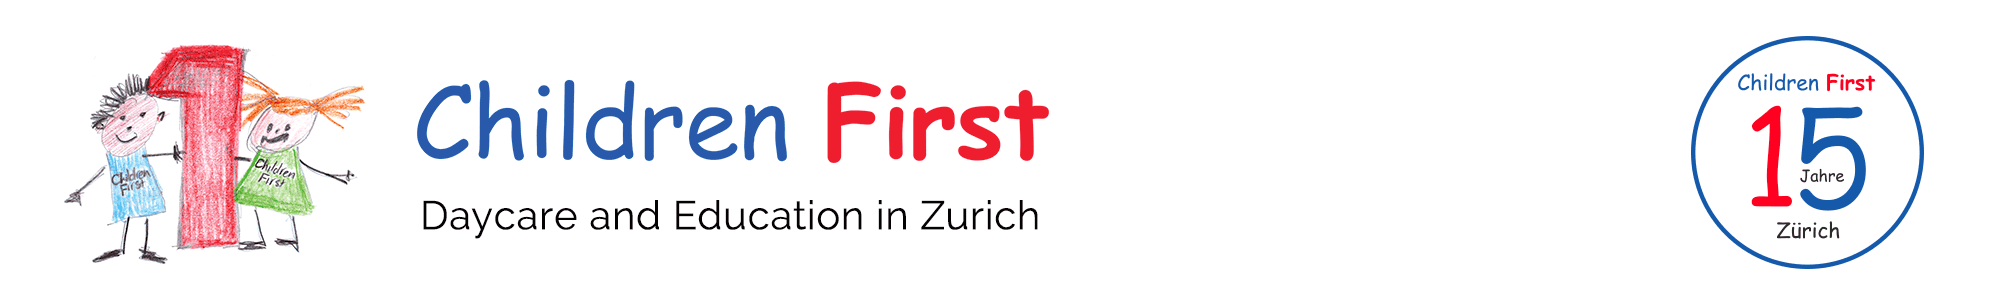 Children First Daycare and Kindergarten in Zurich | Children First Association